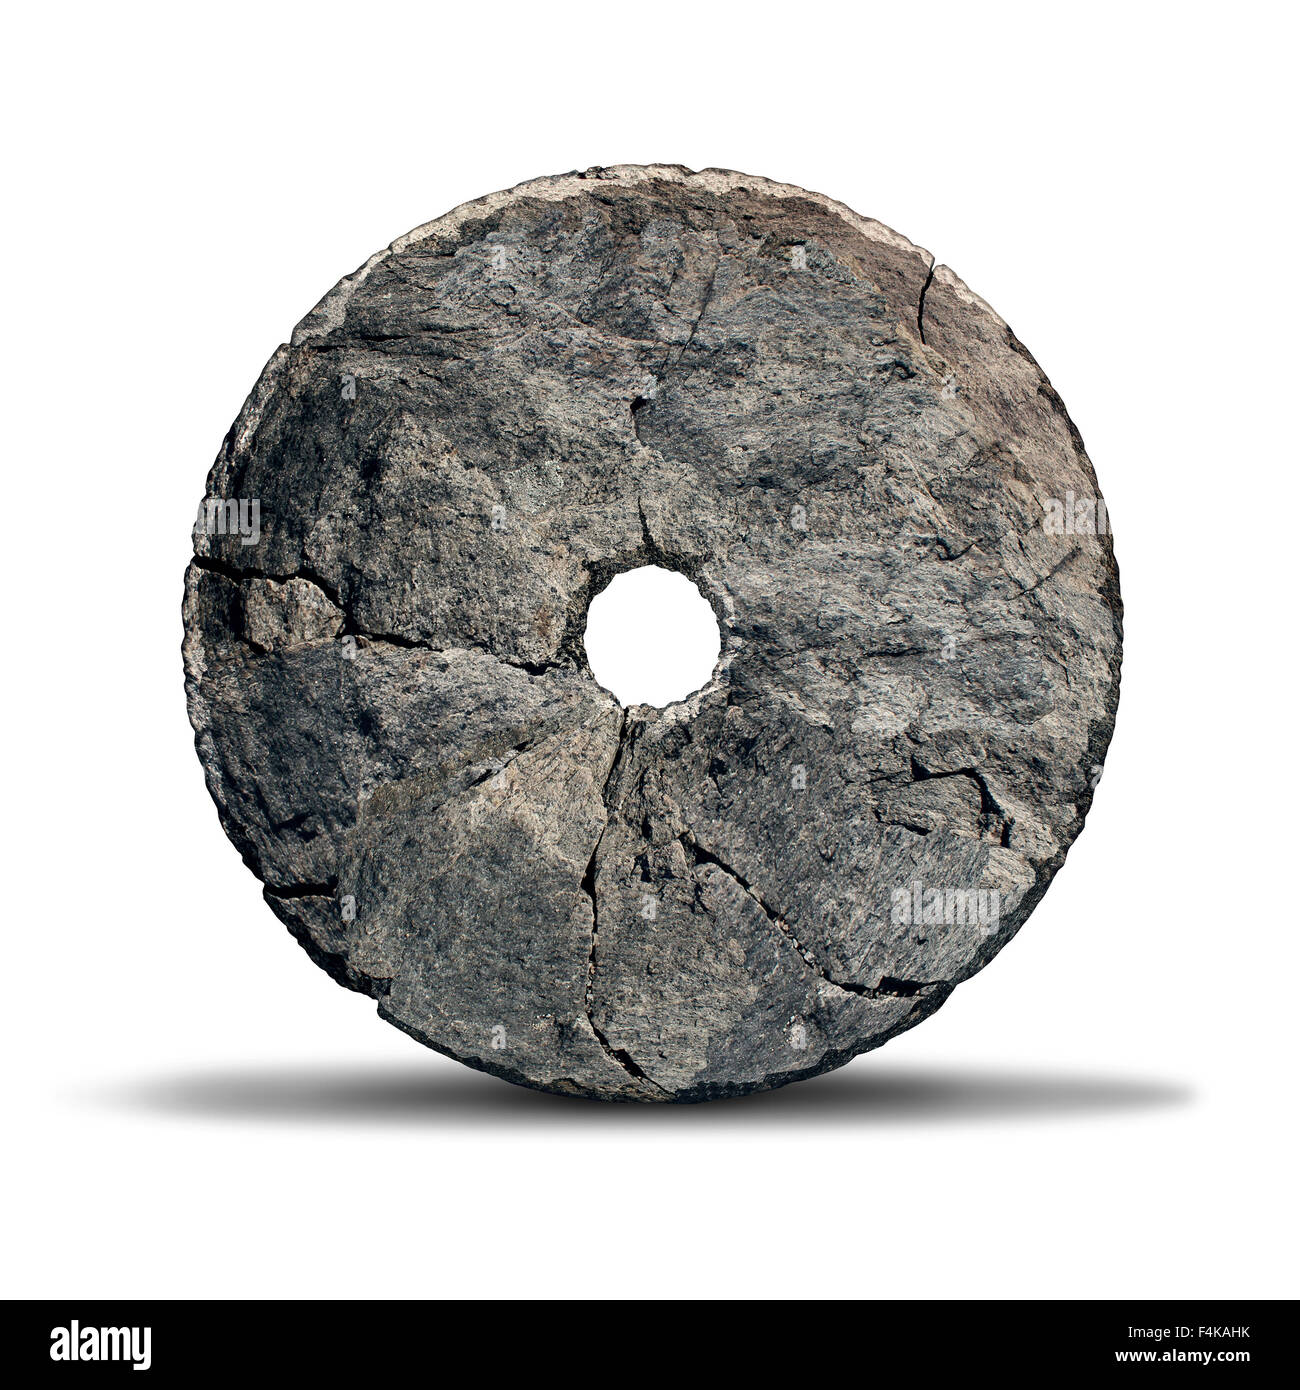 Stone Wheel-Objekt als frühe Erfindung der prähistorischen Ära und altes Symbol für Technologie und Innovation durch ein Höhlenmensch auf weißem Hintergrund gestaltet. Stockfoto